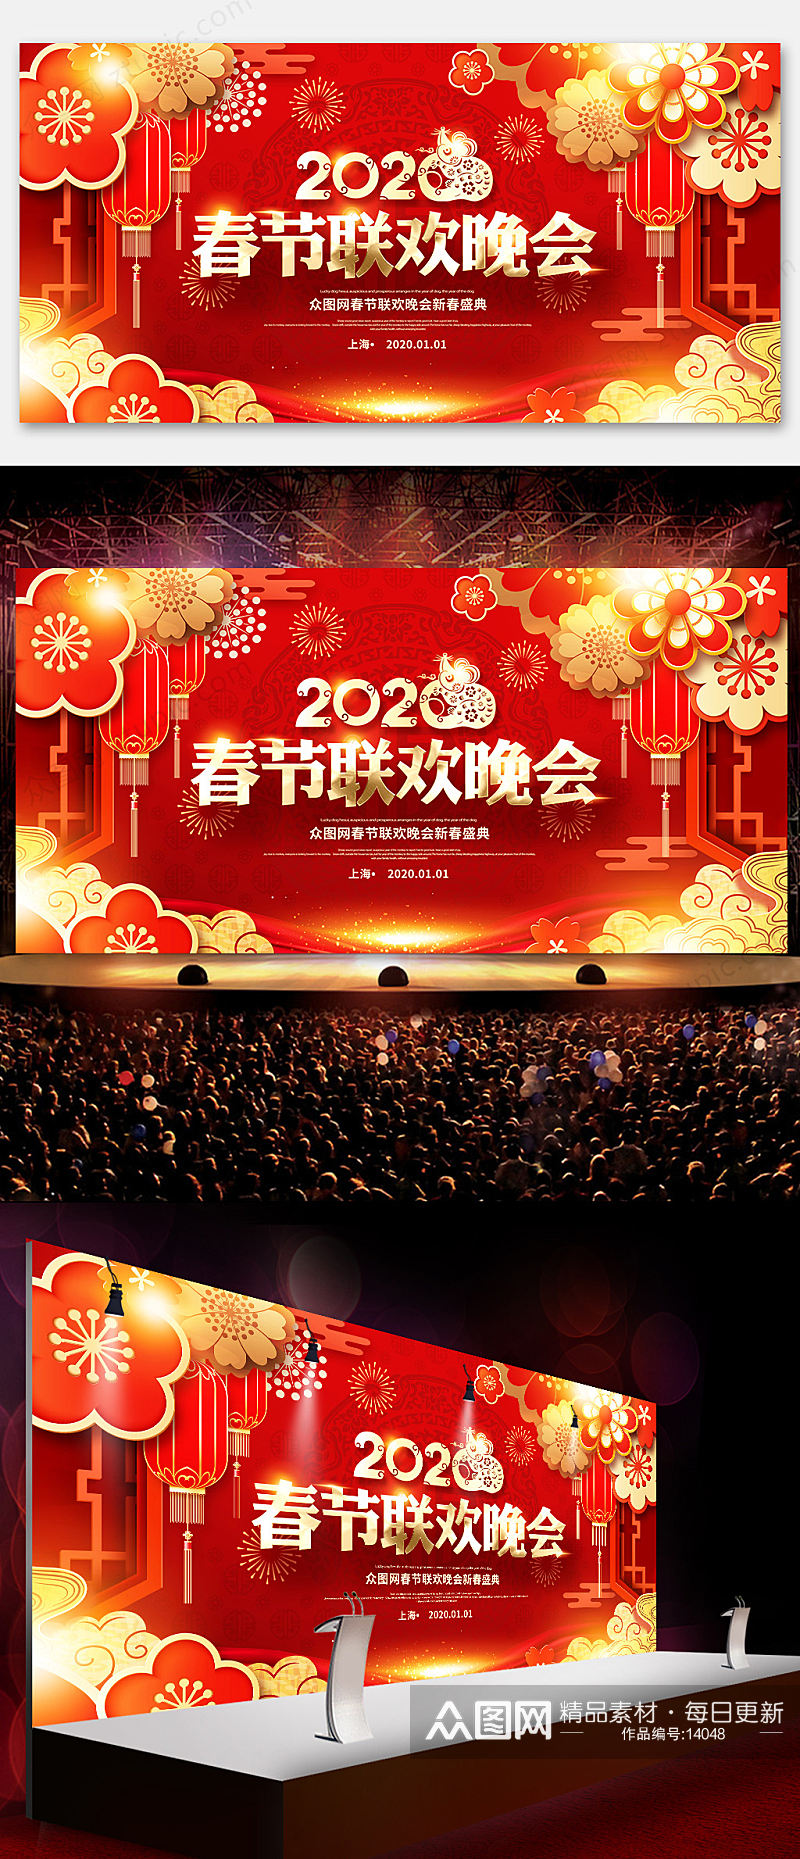 红金春节联欢晚会背景海报设计素材